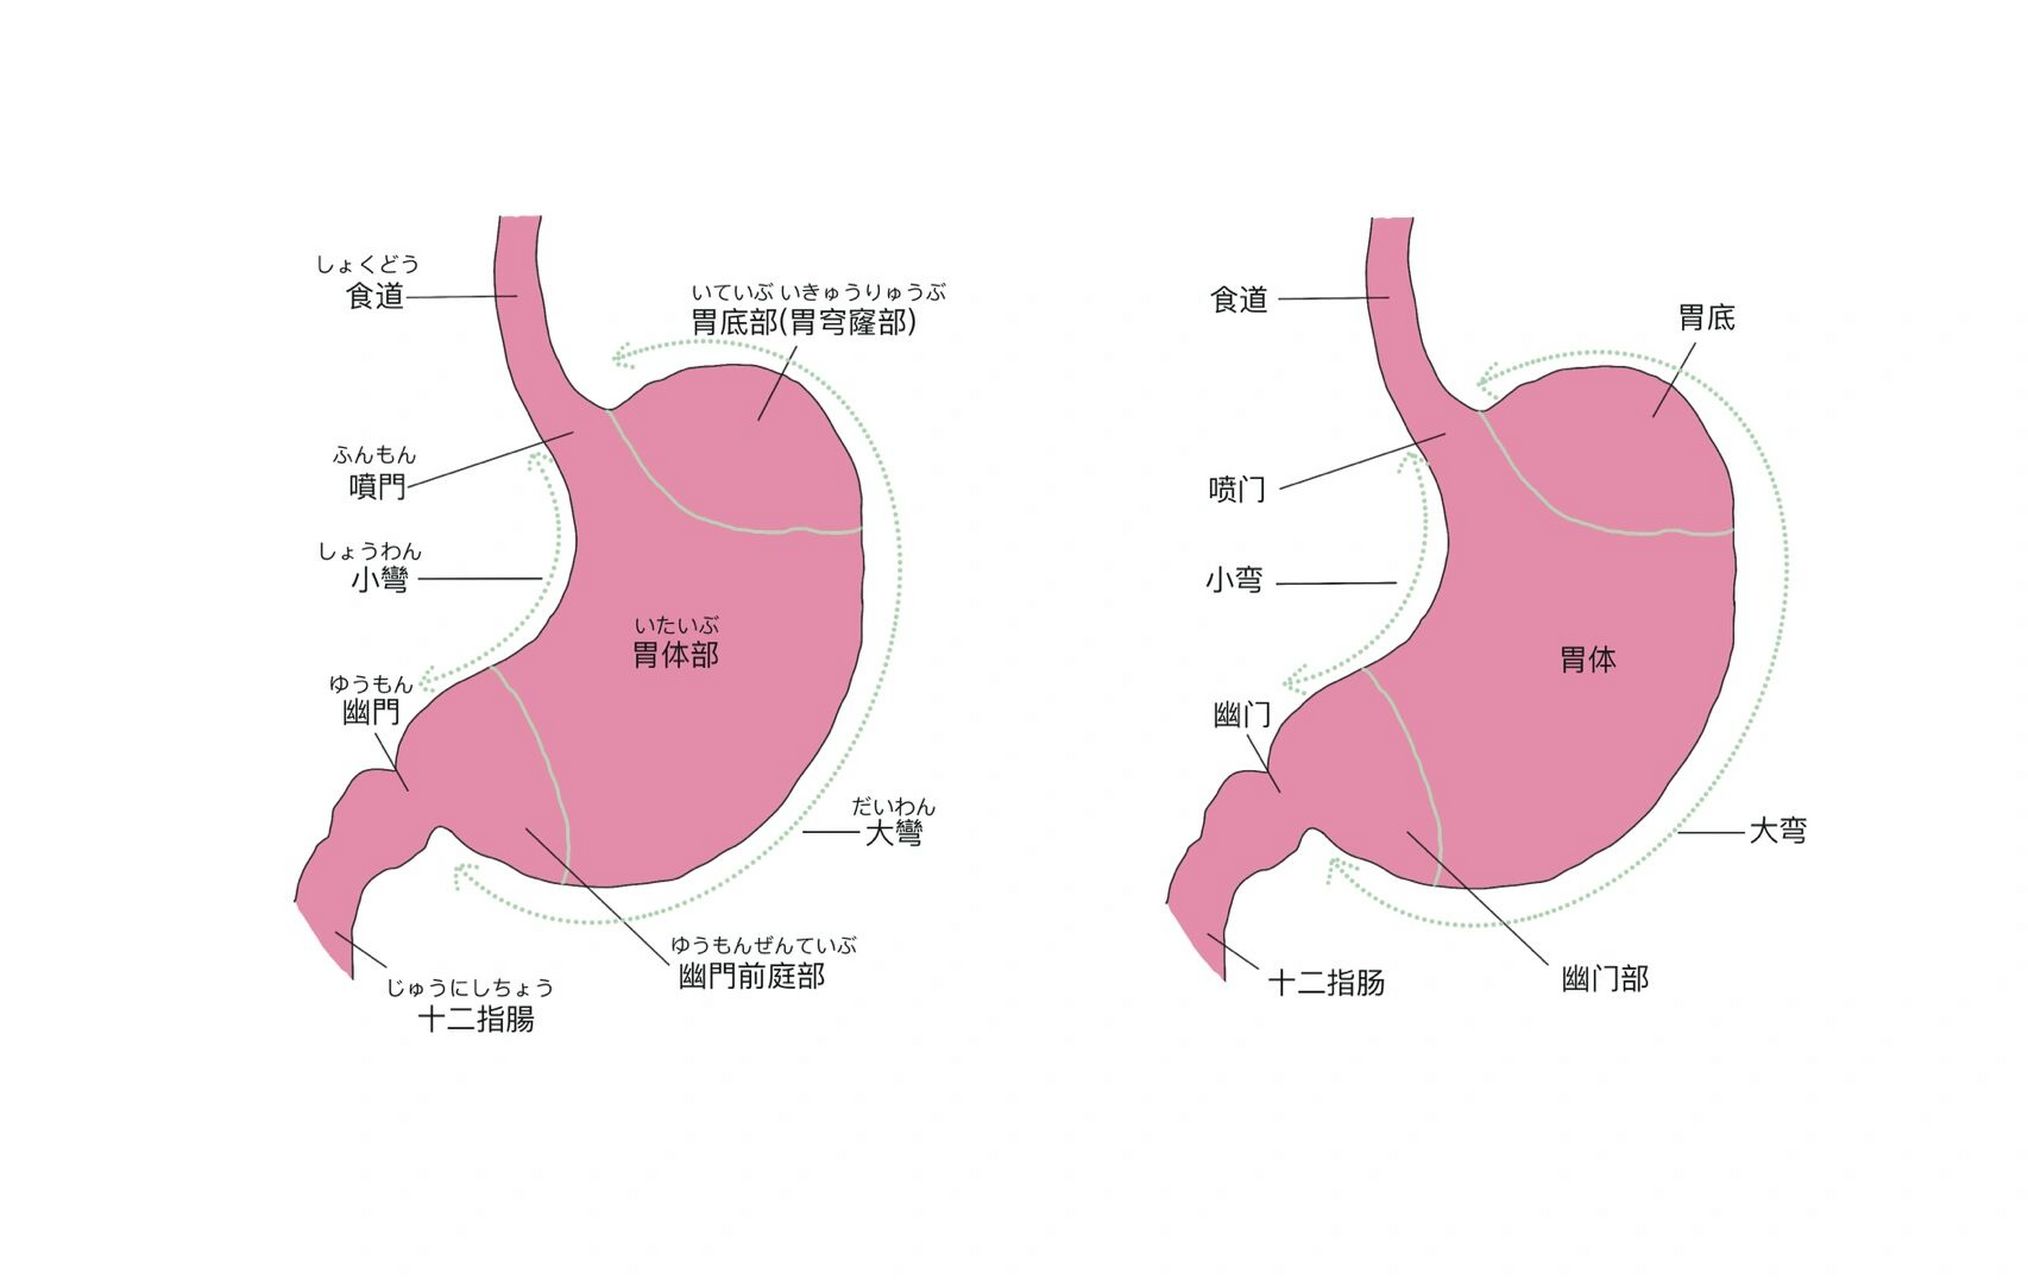 超简单胃部位结构医学插画(中日) 中日医学插画手绘原创 3 软件使用